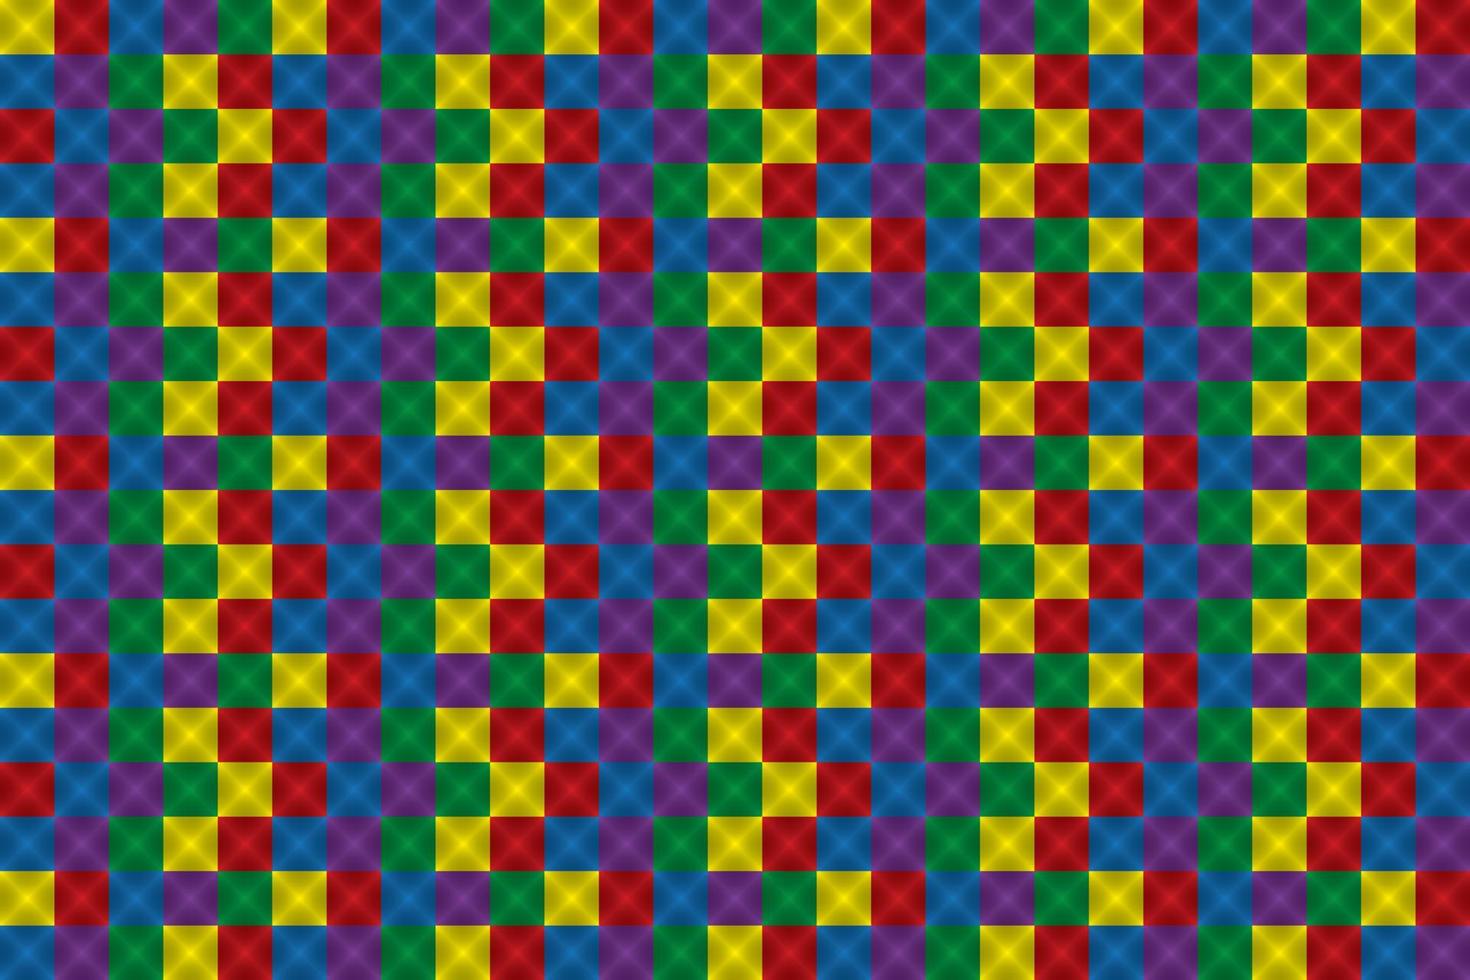 abstrato colorido com cor vermelha, amarela, azul, roxa e verde, quadrado, padrão de mosaico. ilustração vetorial. vetor